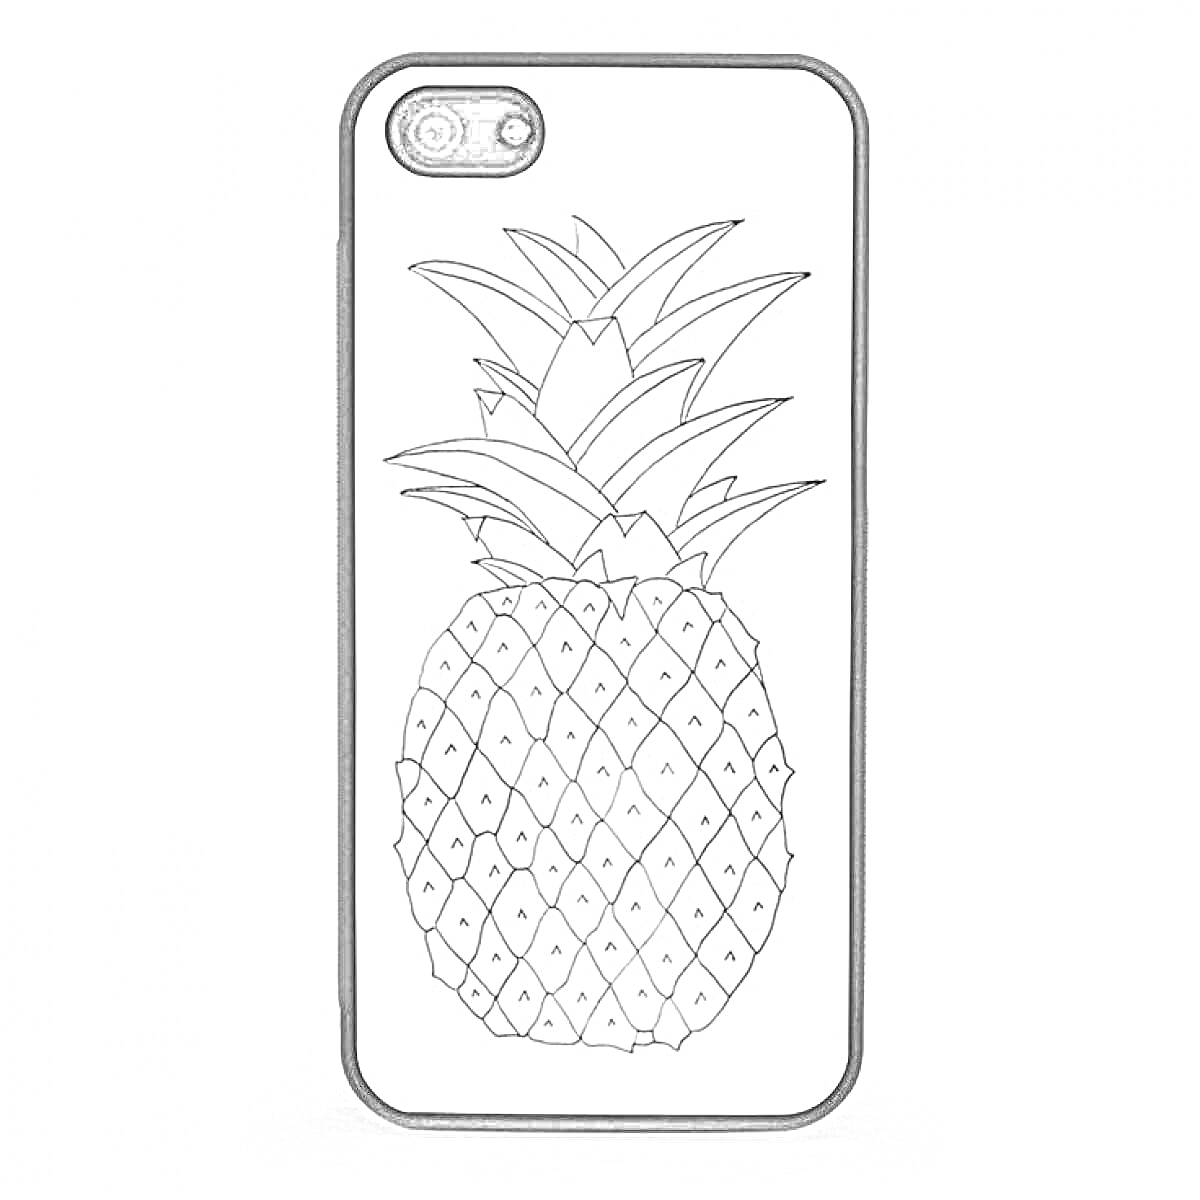  Чехол для айфона с рисунком ананаса